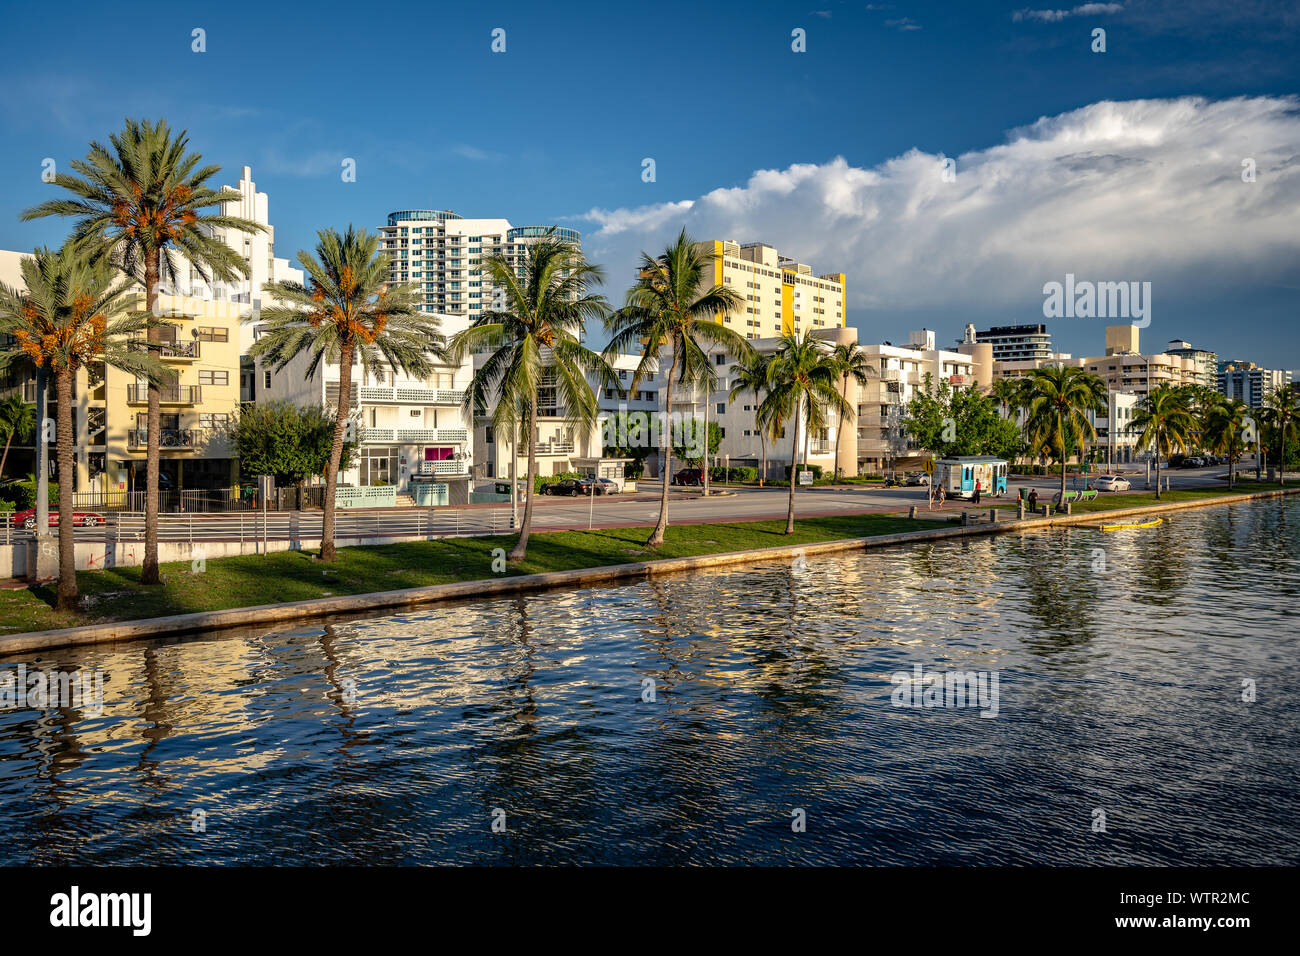 Miami Beach, Floride, USA - bâtiments historiques dans le milieu de l'enceinte de la plage Banque D'Images